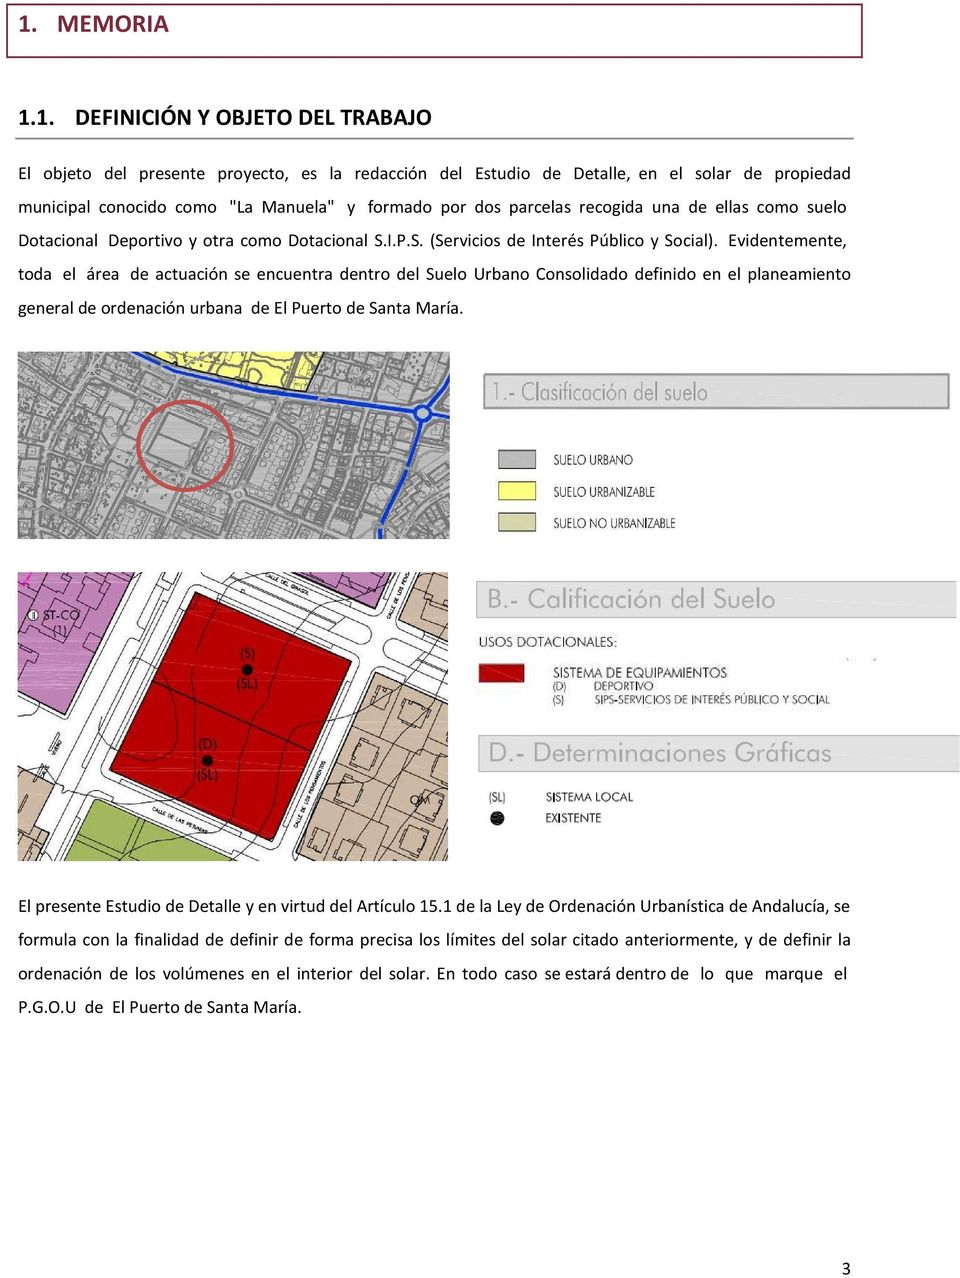 Evidentemente, toda el área de actuación se encuentra dentro del Suelo Urbano Consolidado definido en el planeamiento general de ordenación urbana de El Puerto de Santa María.